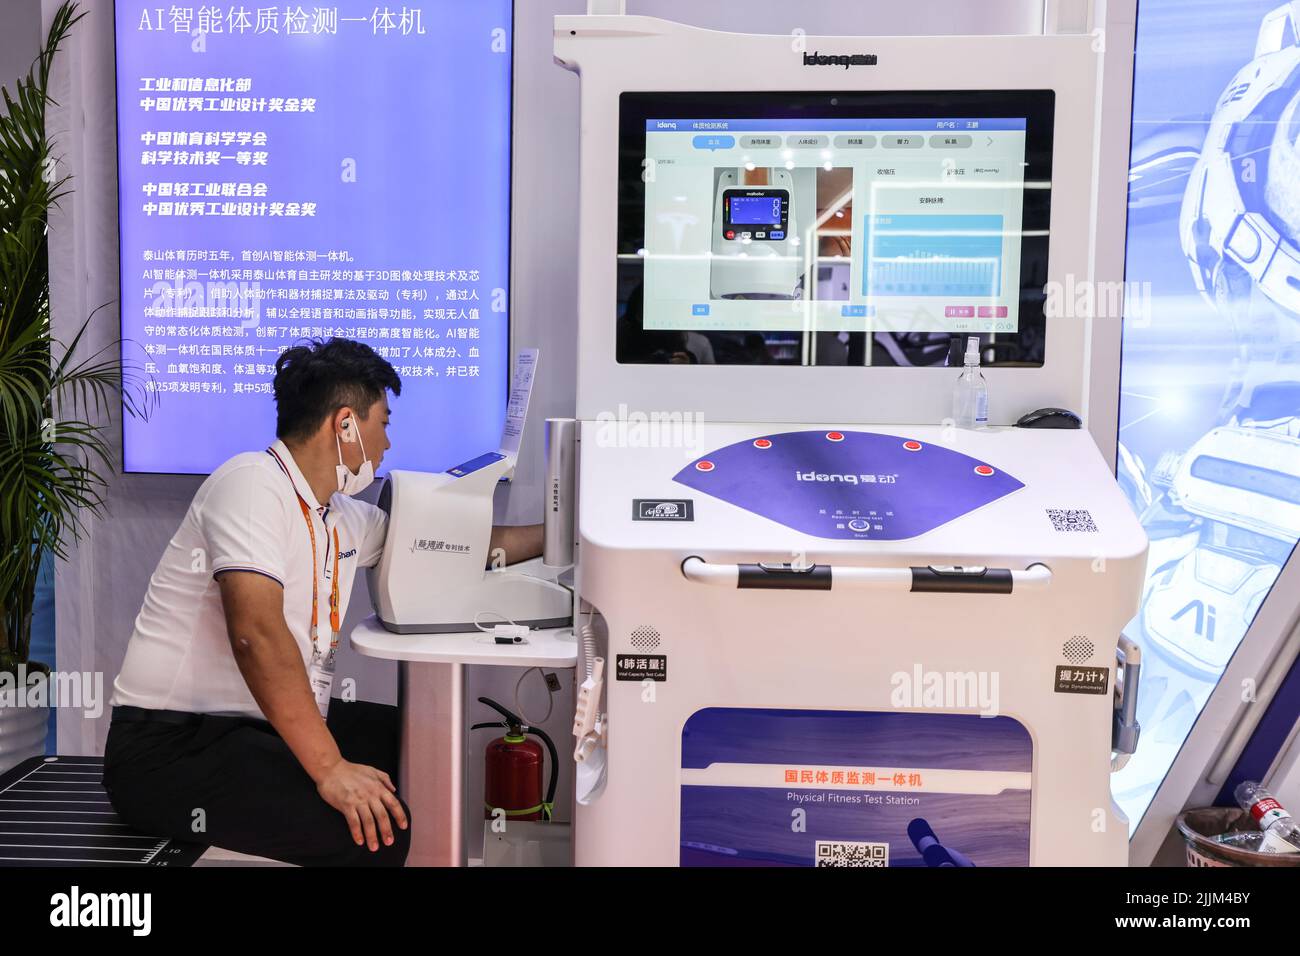 (220727) -- HAIKOU, 27 juillet 2022 (Xinhua) -- un exposant fait la démonstration d'une station d'essai physique à la deuxième exposition internationale chinoise des produits de consommation (CIPE) à Haikou, dans la province de Hainan, au sud de la Chine, au 26 juillet 2022. L'expo présente plus de 2 800 marques du pays et de l'étranger. (Xinhua/Zhang Liyun) Banque D'Images